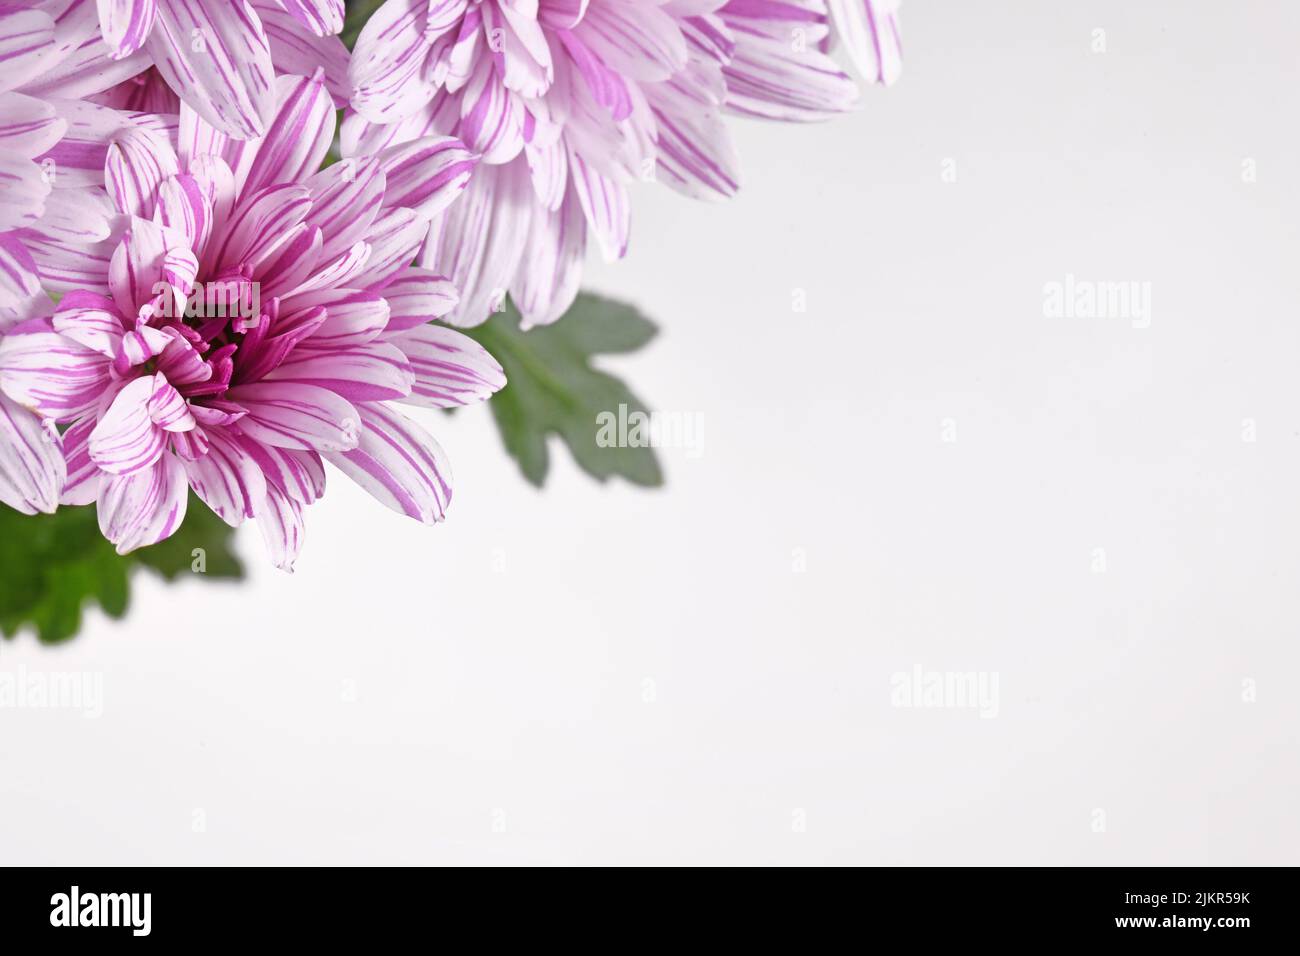 Rosa y blanco Crisantemo flor en esquina de fondo gris claro con espacio de copia Foto de stock